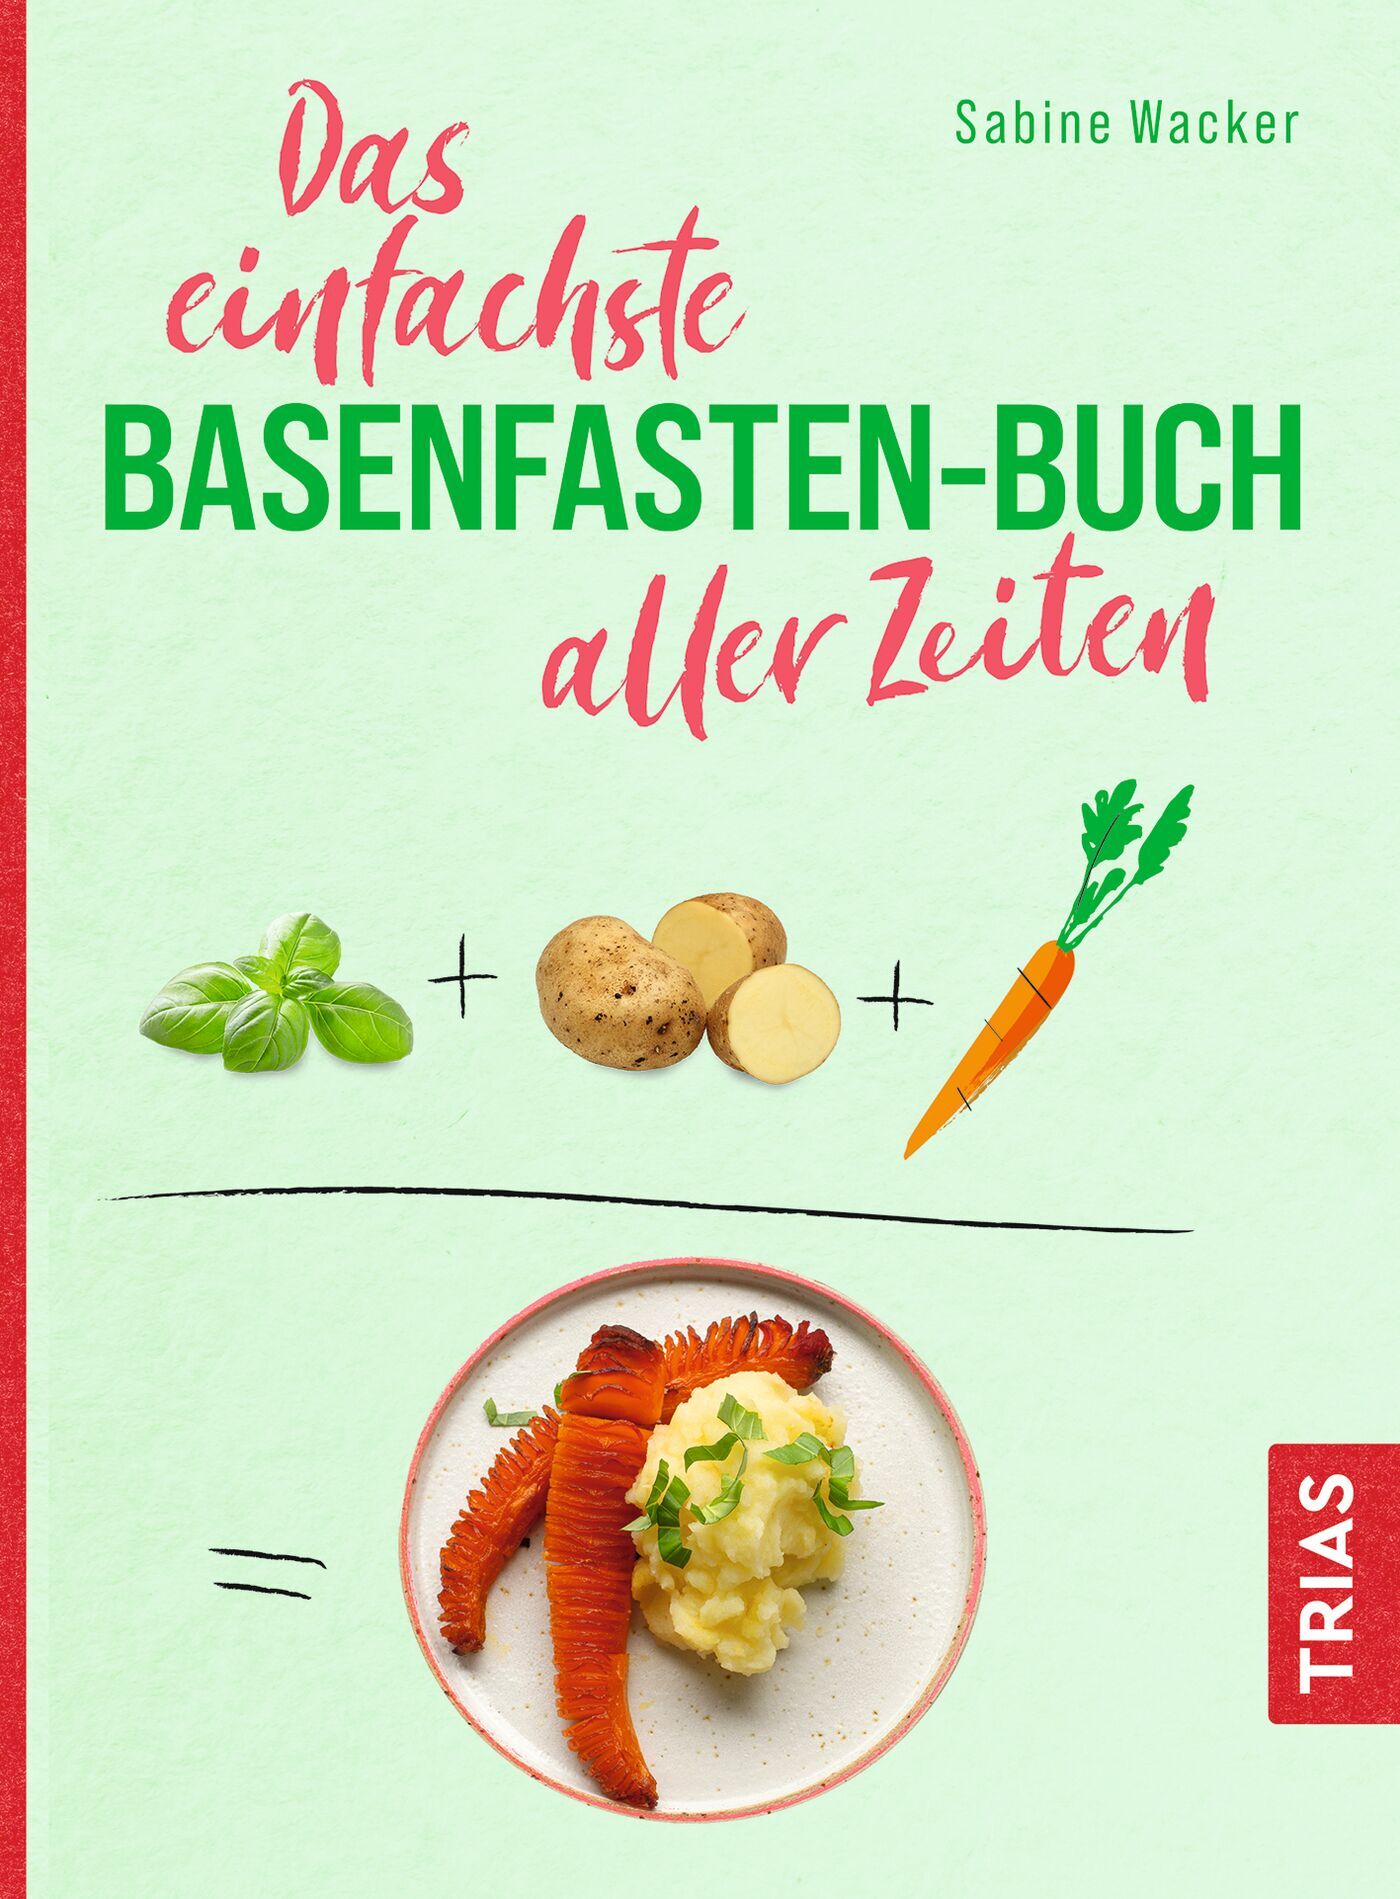 Das einfachste Basenfasten-Buch aller Zeiten, 9783432115153